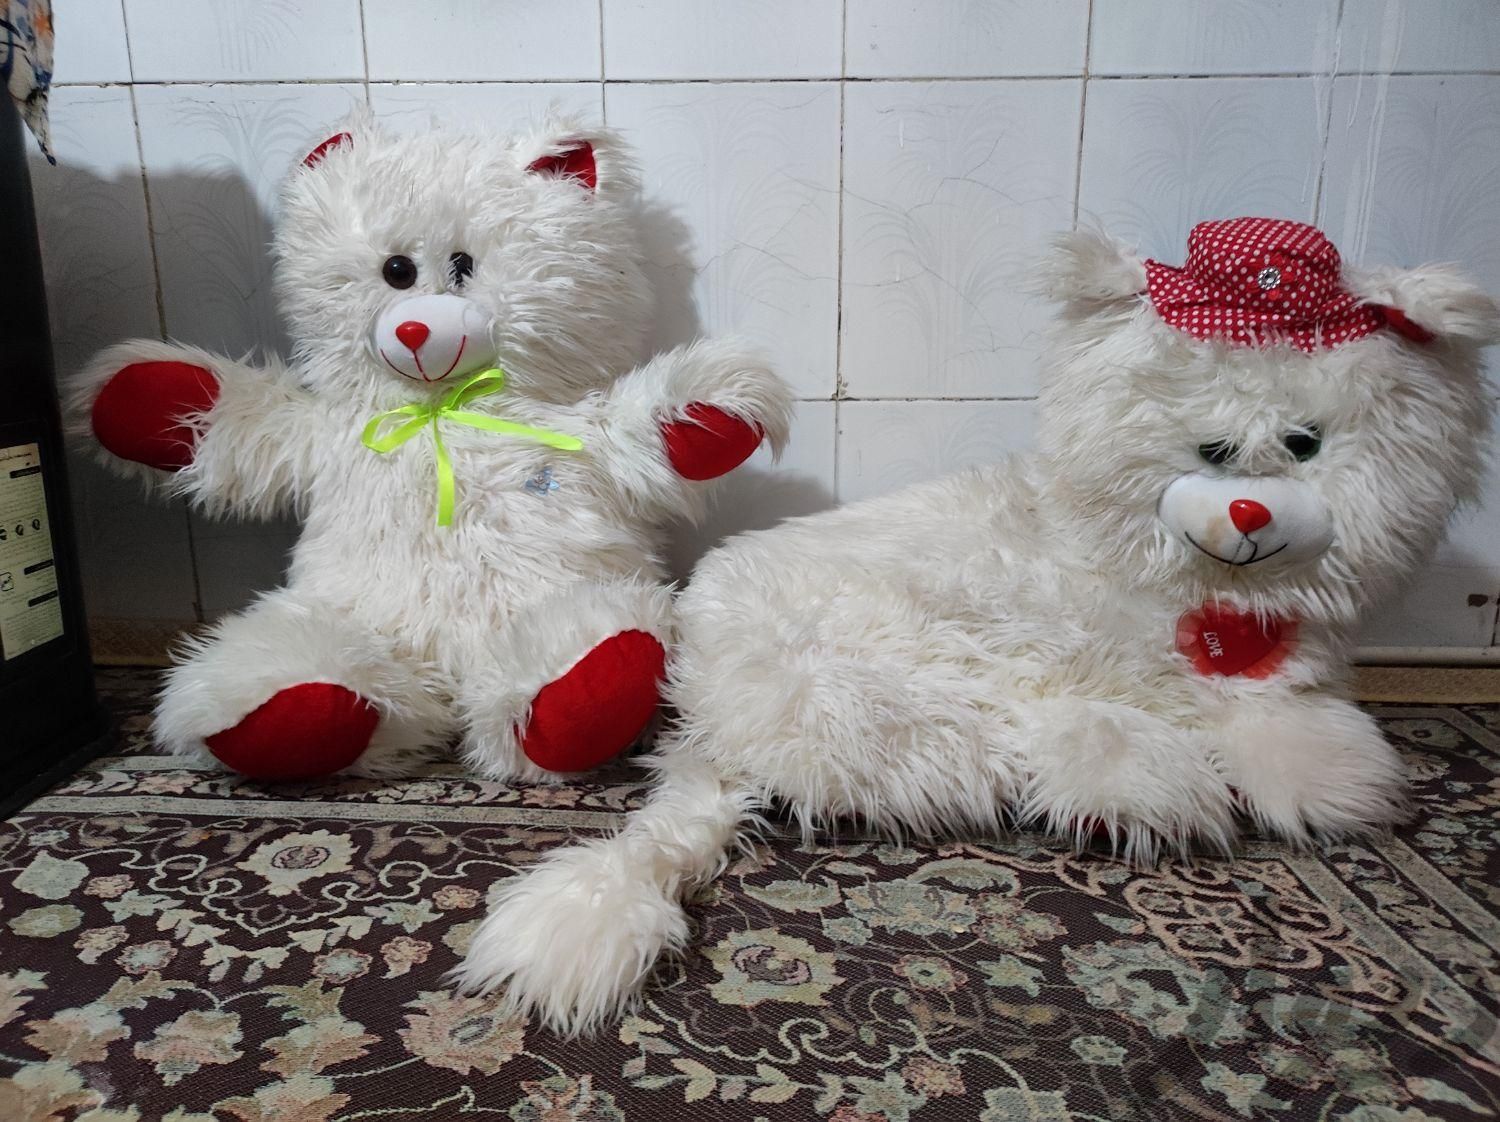 عروسک بزرگ مناسب سیسمونی|اسباب بازی|مشهد, شهرک شهید رجایی|دیوار